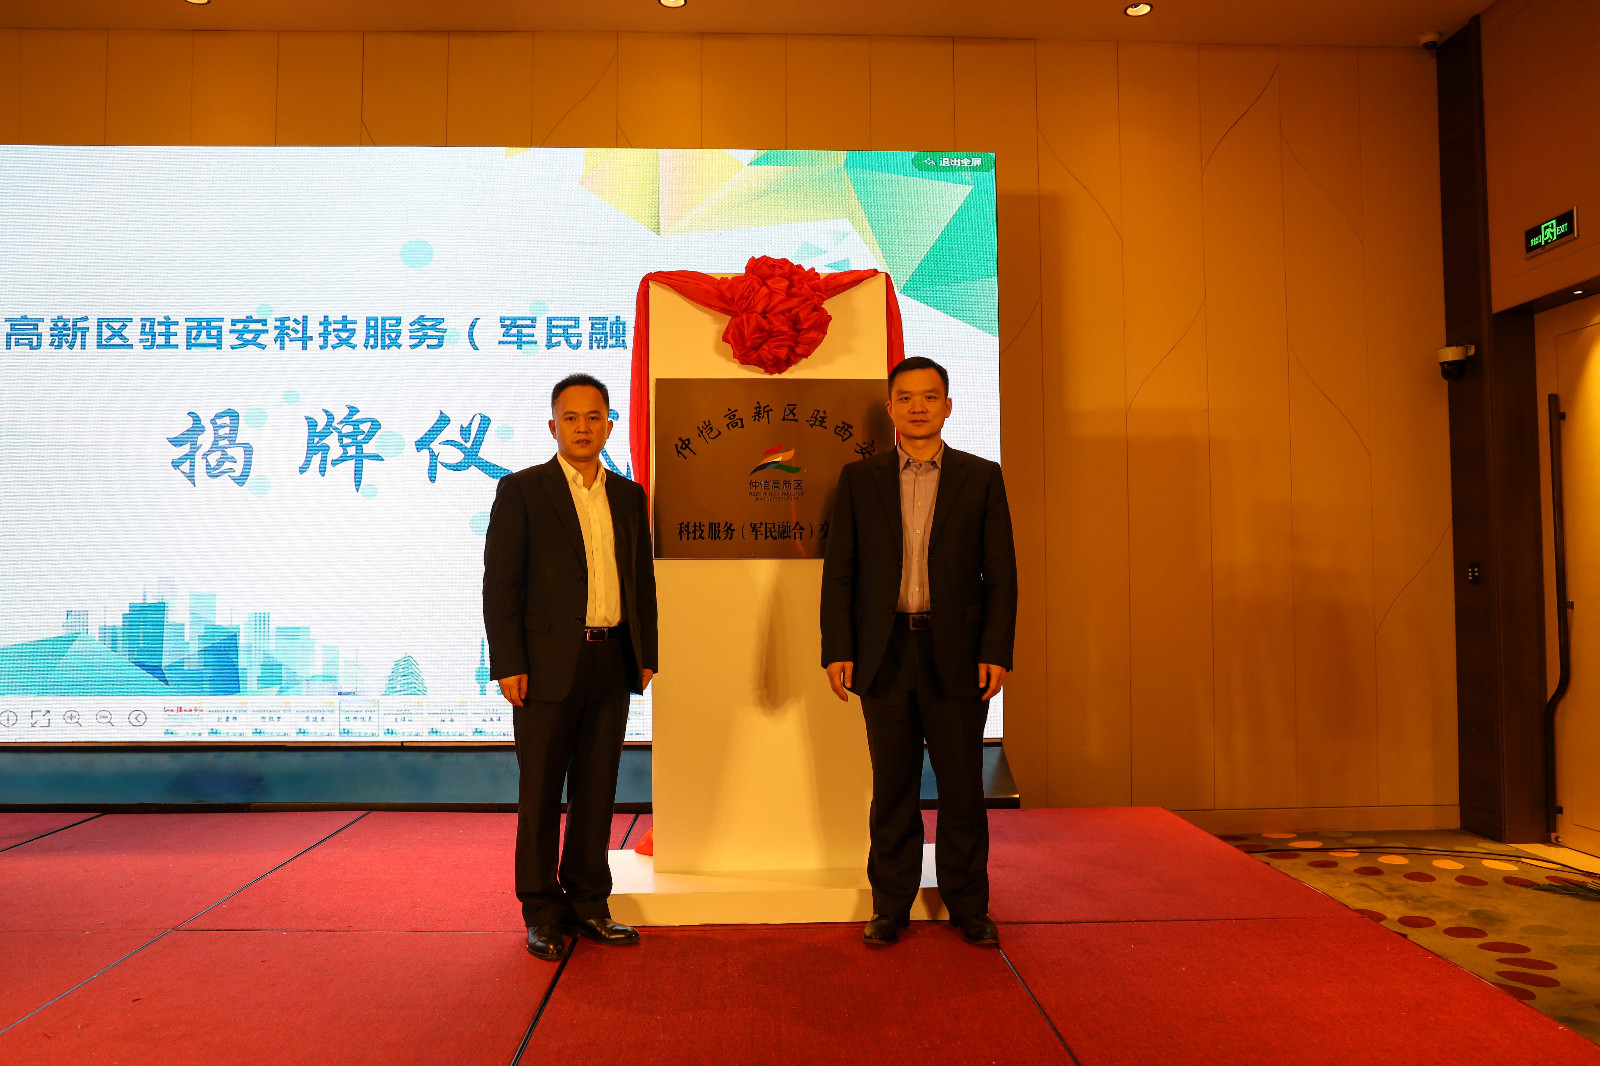 惠州仲恺高新区链接西安  将在硬科技领域展开深度合作